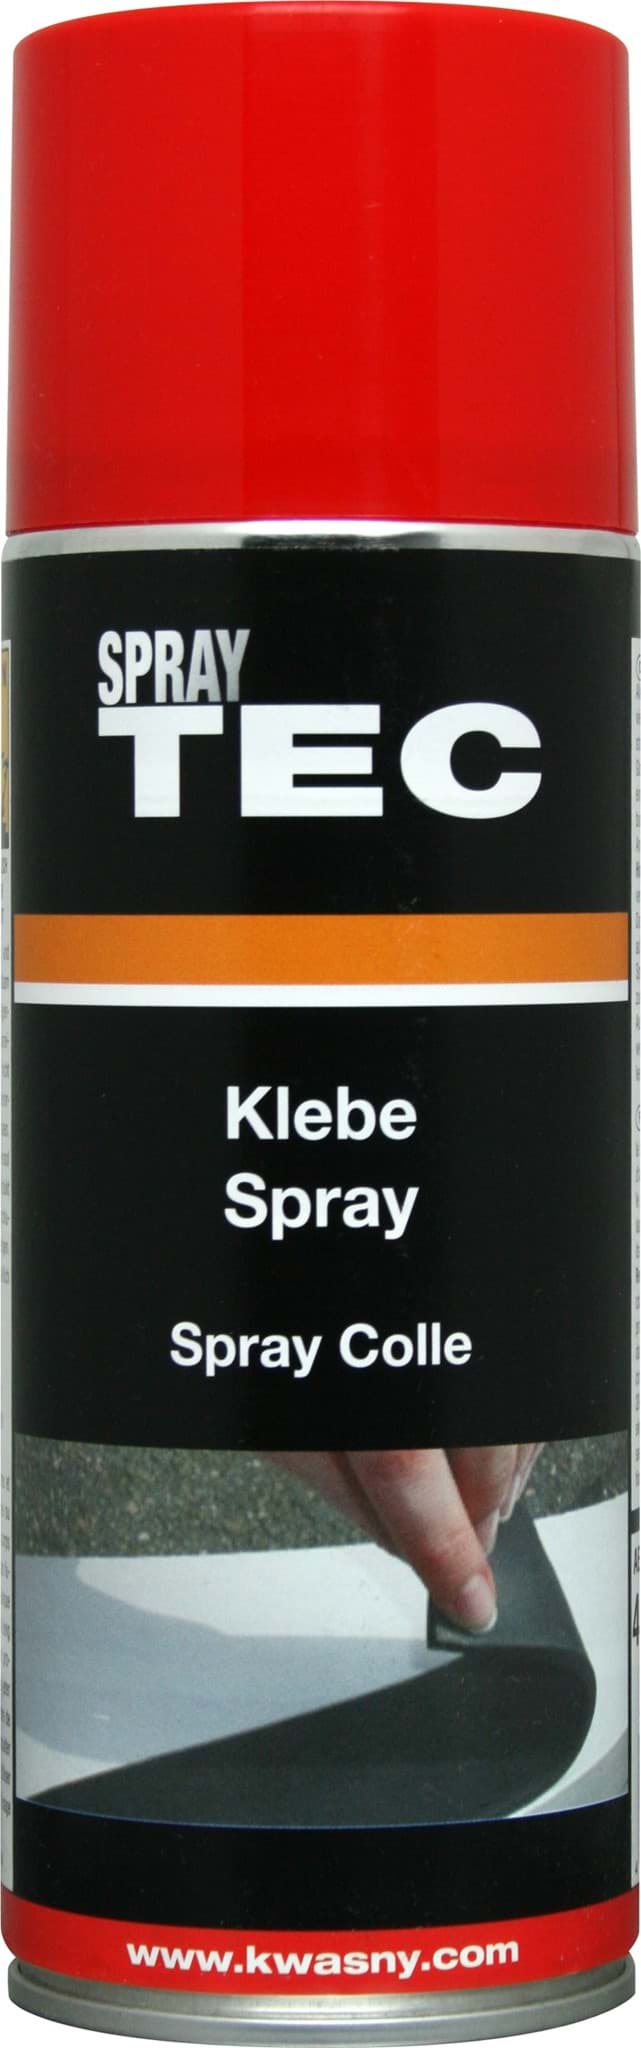 SprayTec Klebe-Spray 400ml 235050 resmi